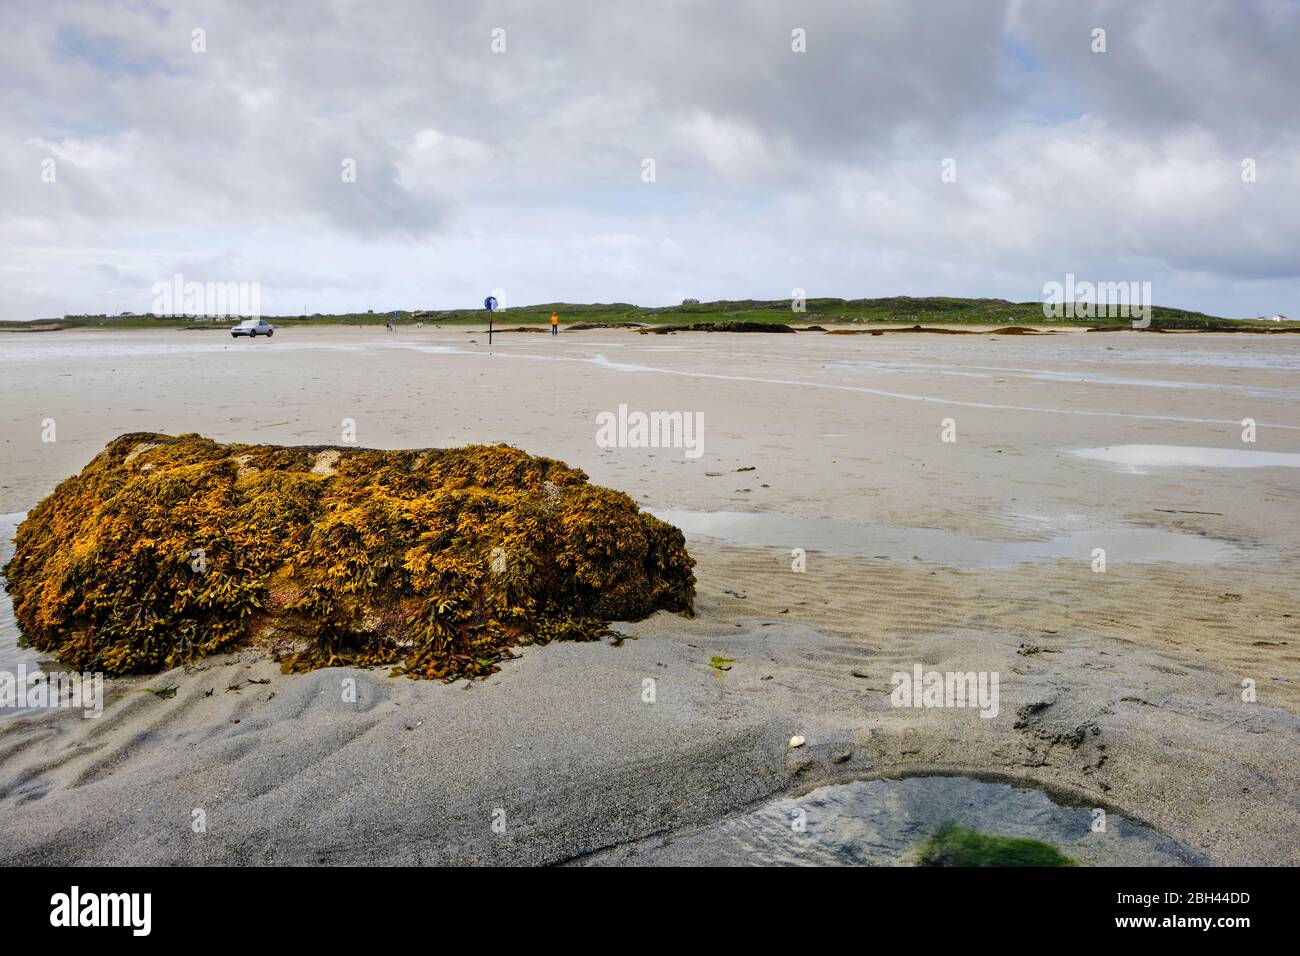 Il grande tratto di sabbia per raggiungere l'isola di Omey seguendo le indicazioni della freccia. L'isola di Omey è un'isola di marea situata vicino a Claddaghduff sulla ed occidentale Foto Stock